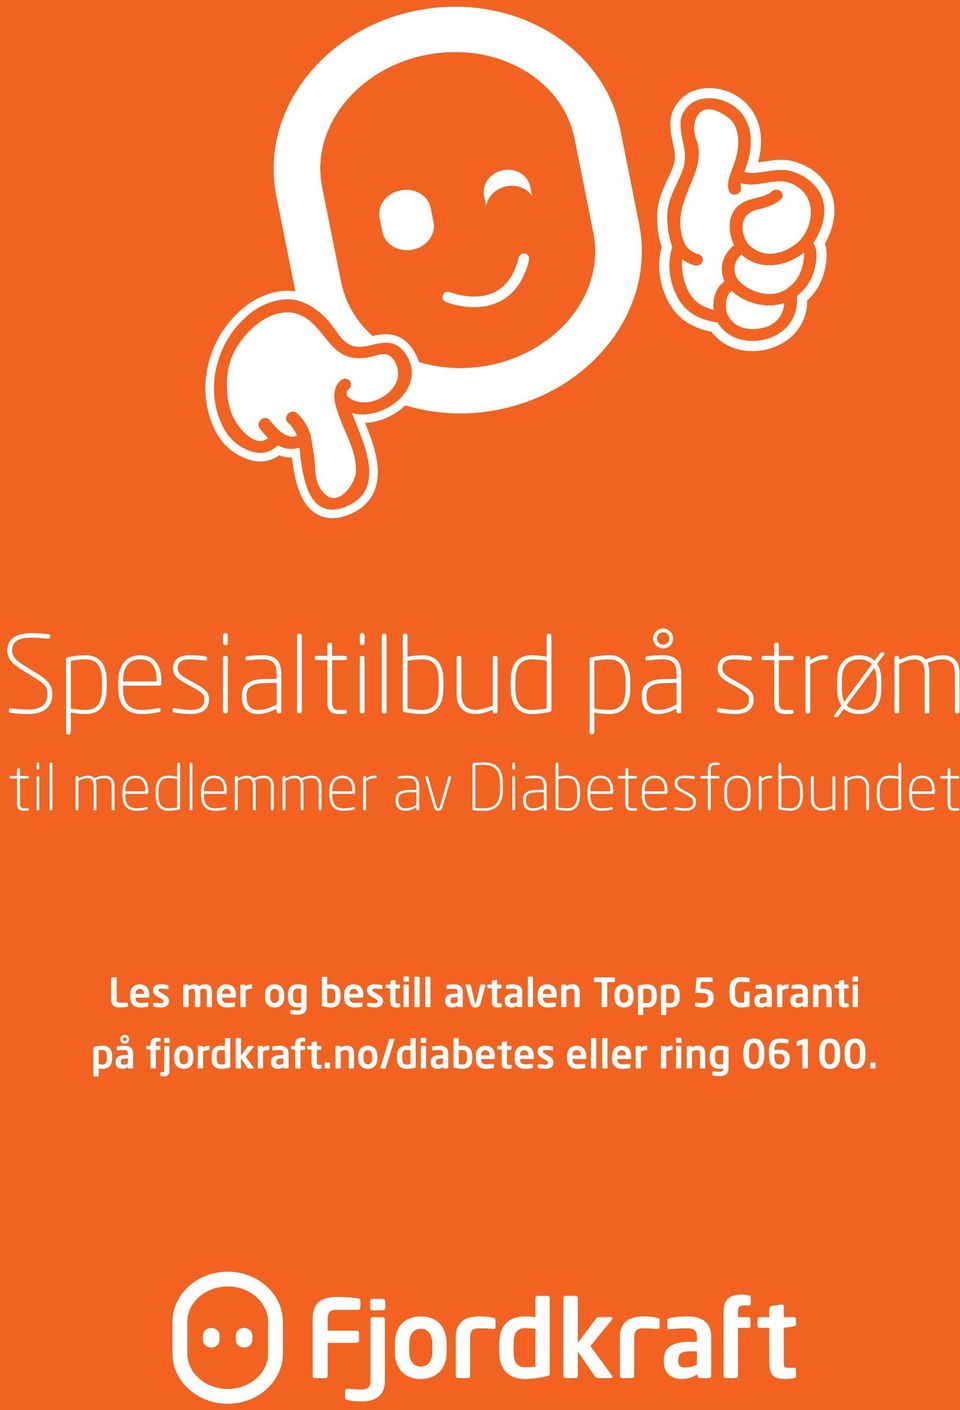 5 Garanti på fjordkraft.nodiabetes eller ring 06100. www.